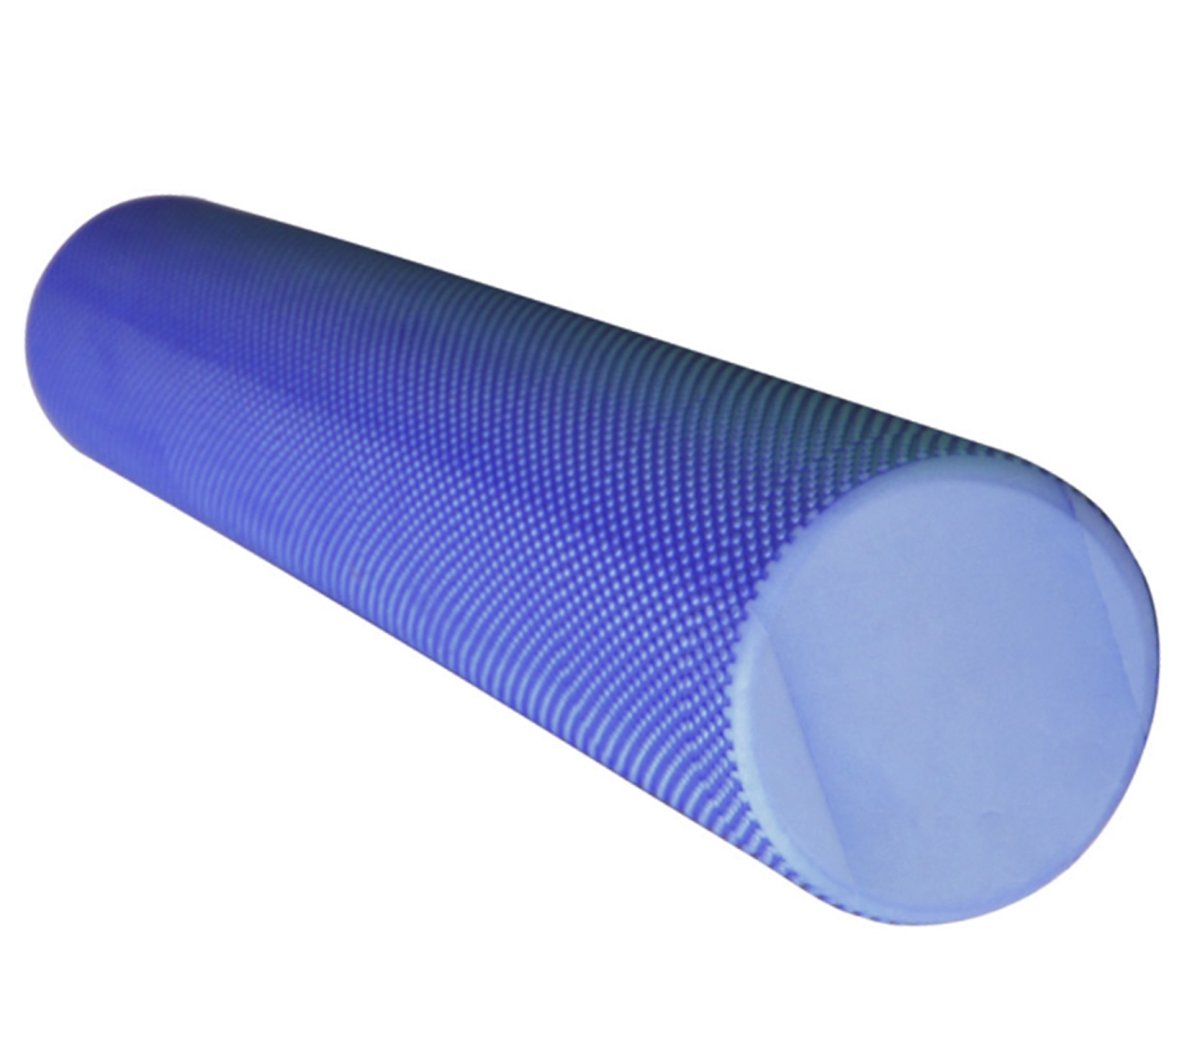 Цилиндр для пилатеса GLT, плотный, гладкий, 90 см х 15 см, Eva, синий